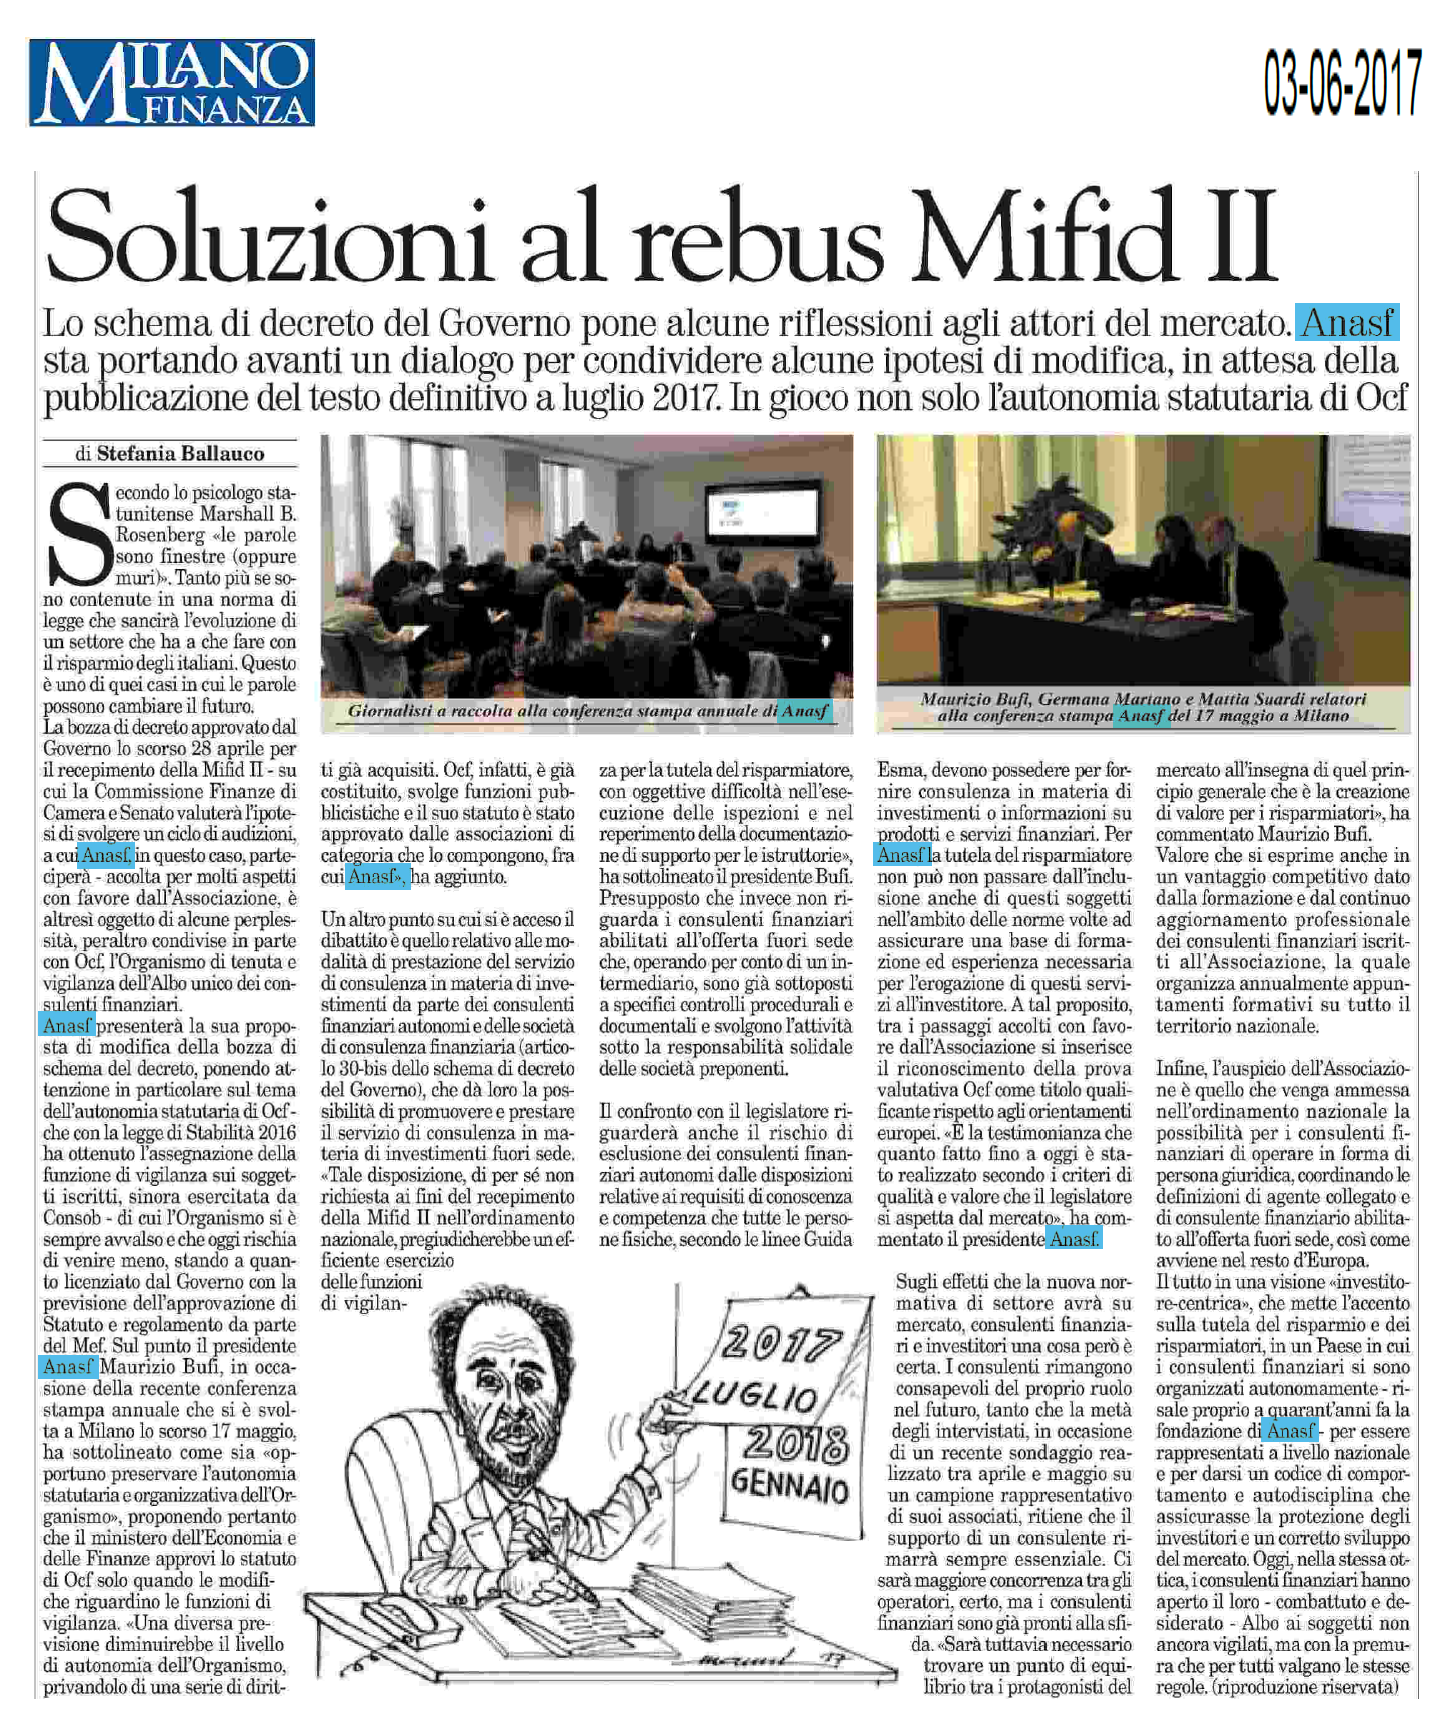 Soluzioni al rebus MiFID II